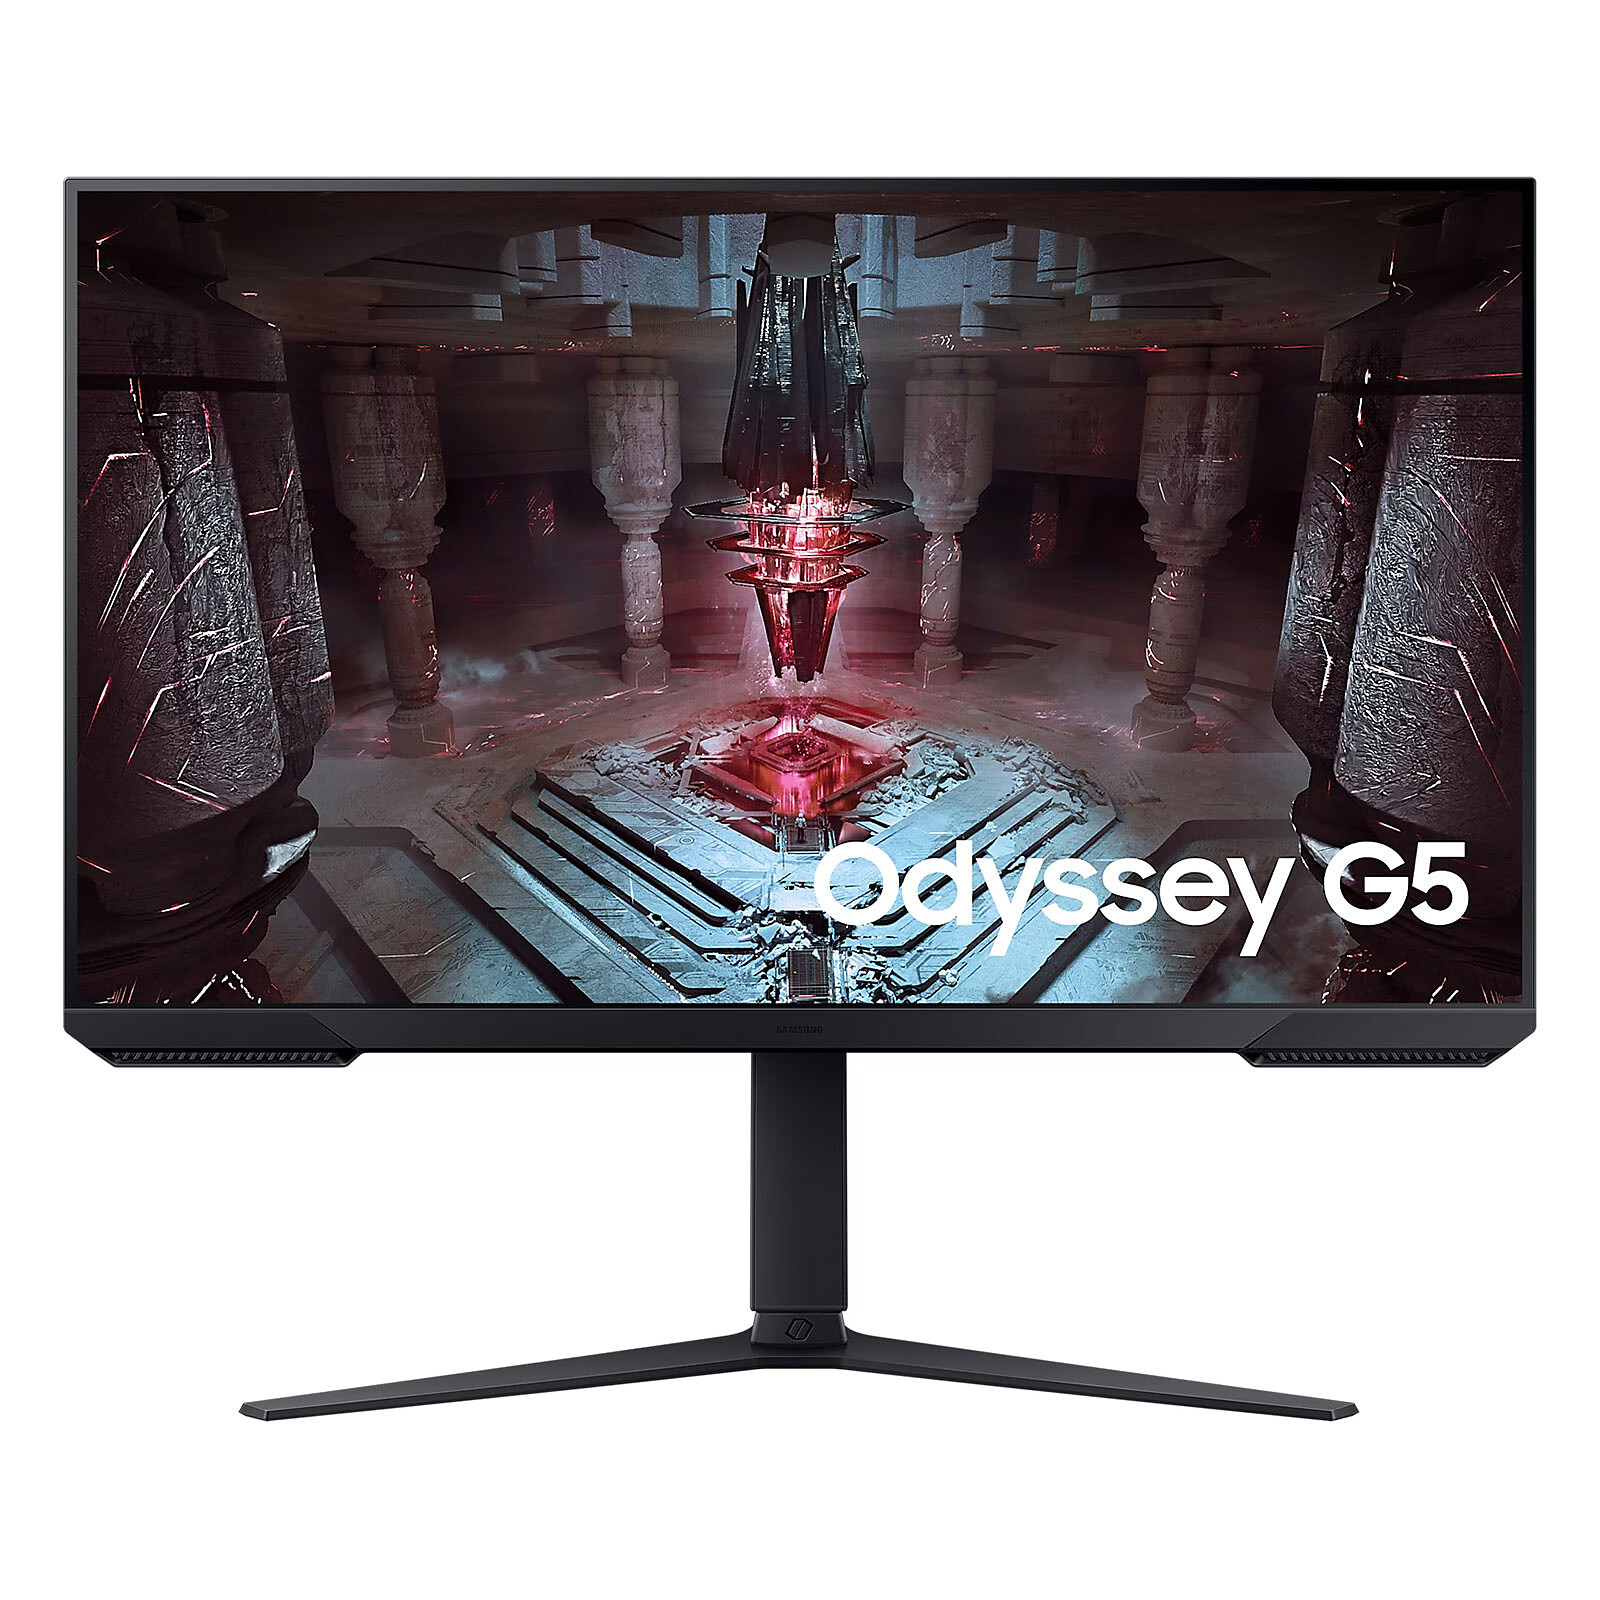 Samsung Odyssey G5 : l'écran gaming incurvé profite d'une belle promotion  dans sa version 32 pouces